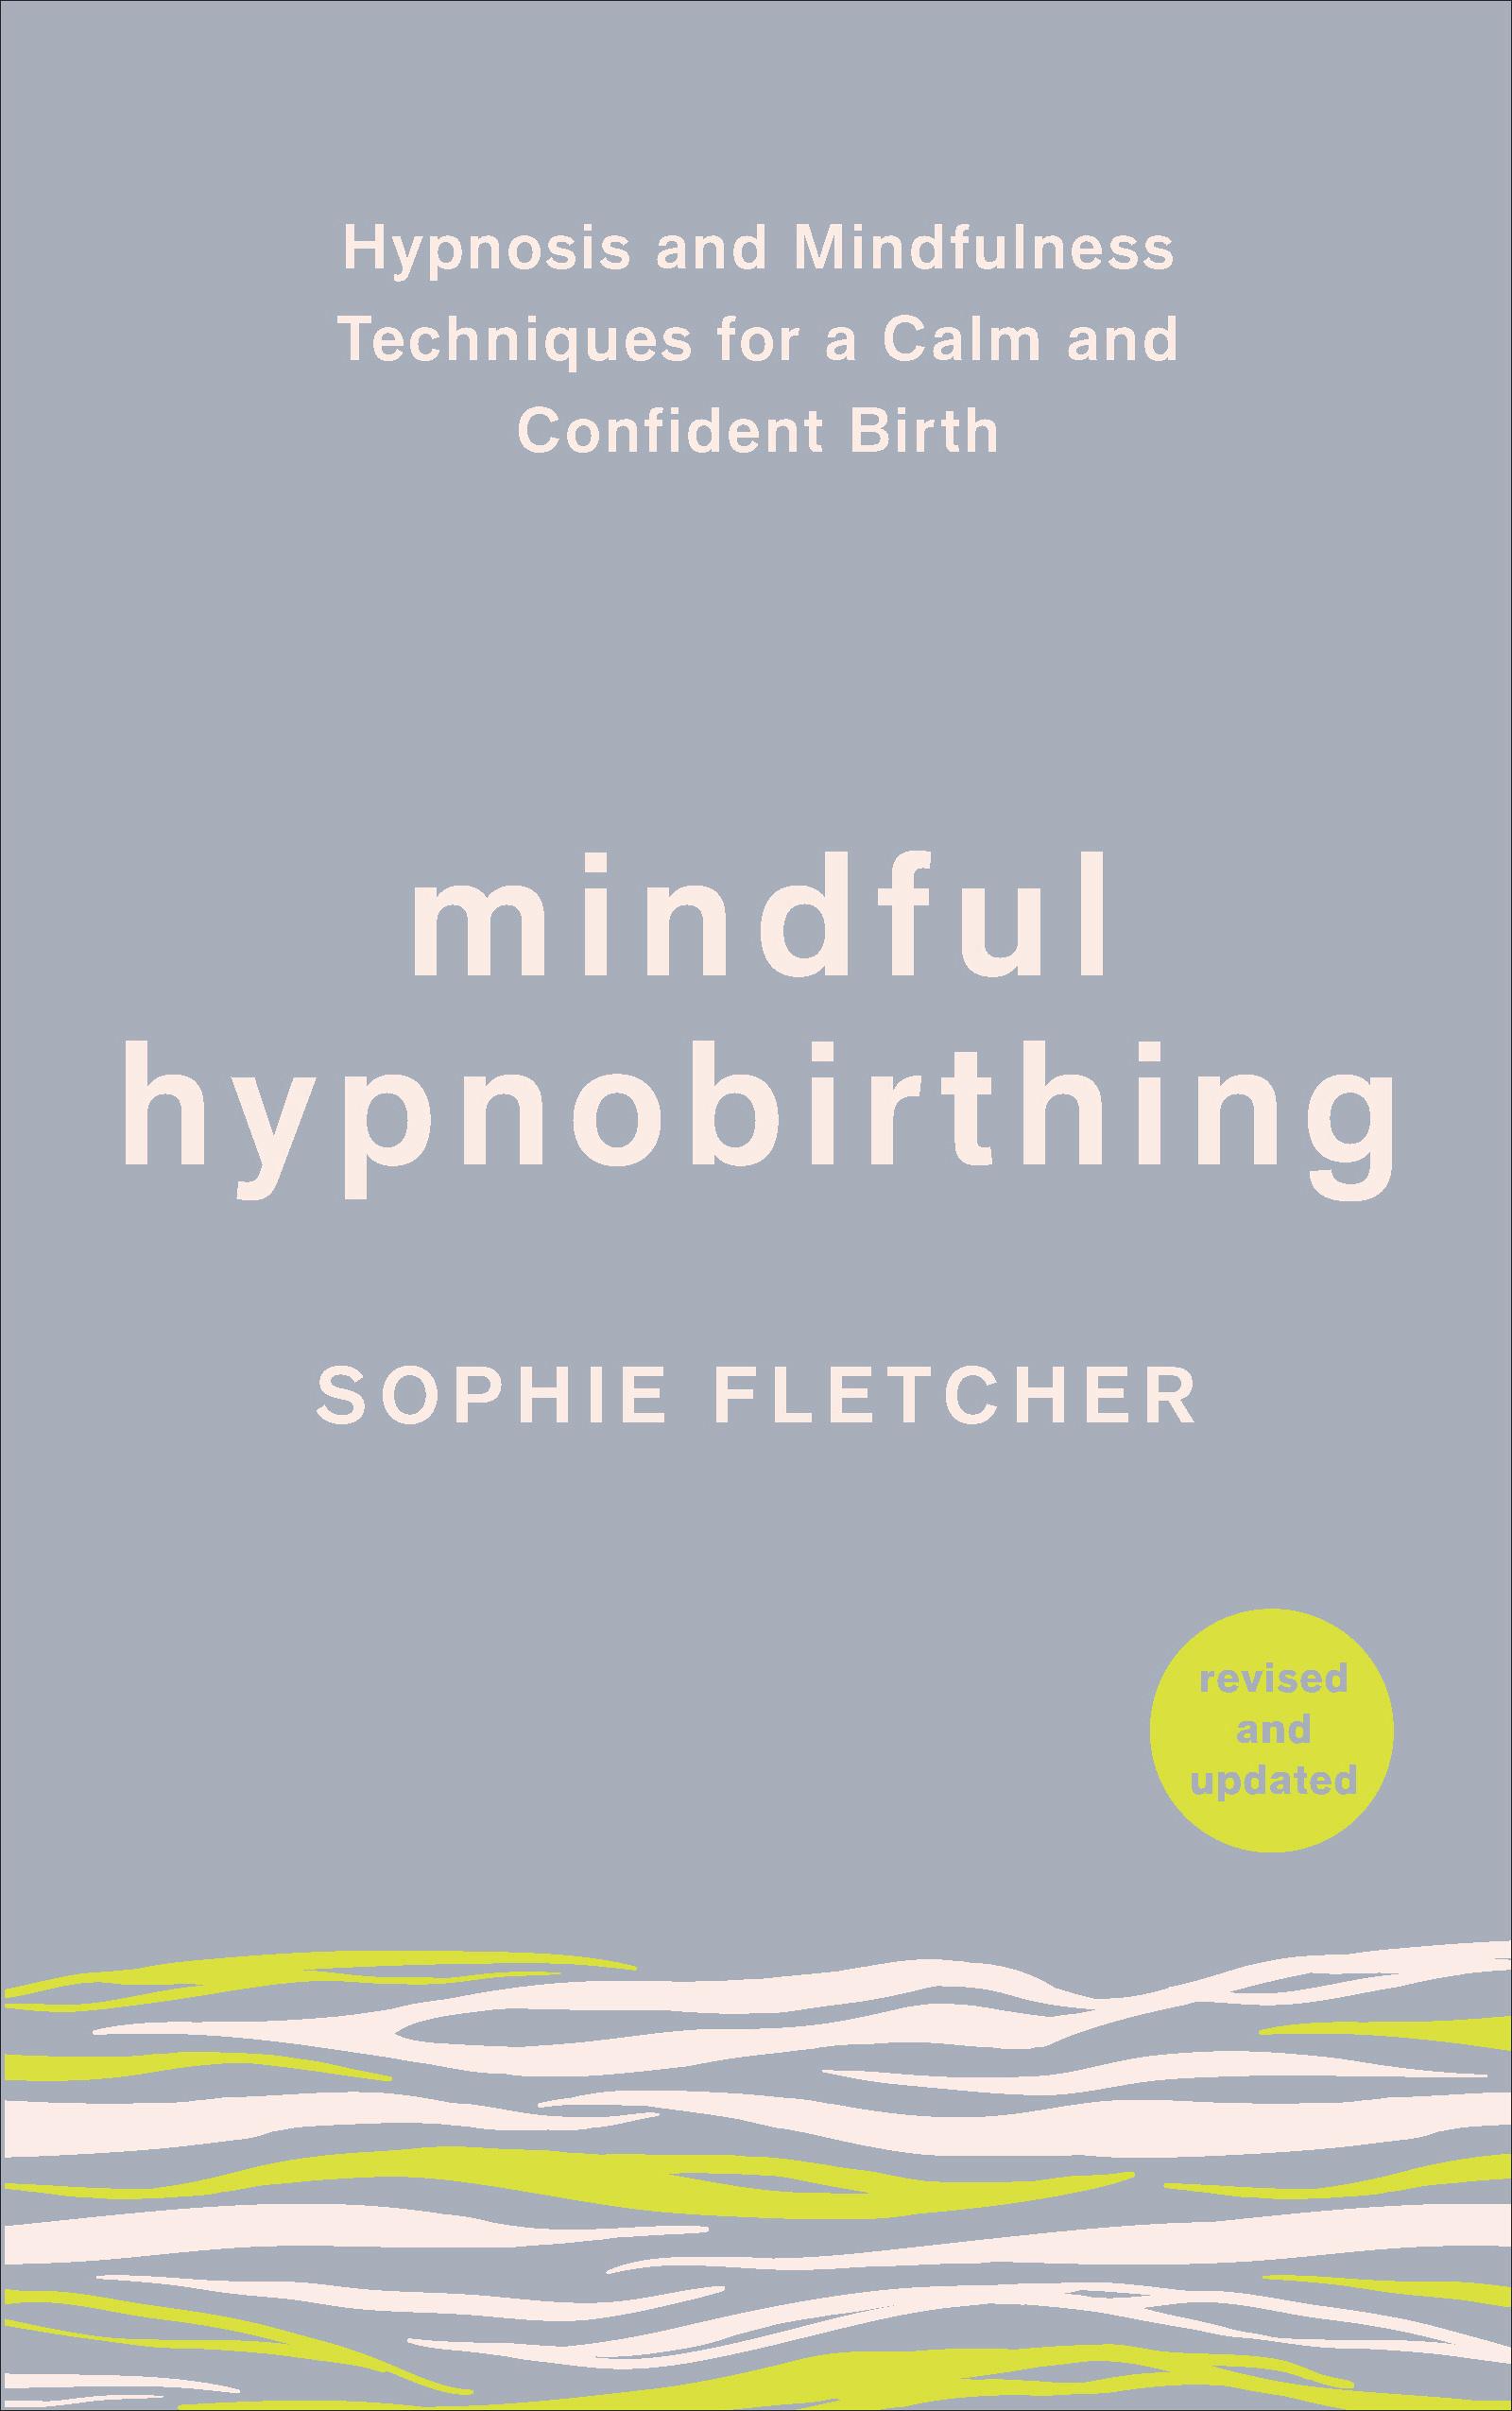 Mindful Hypnobirthing - Sophie Fletcher